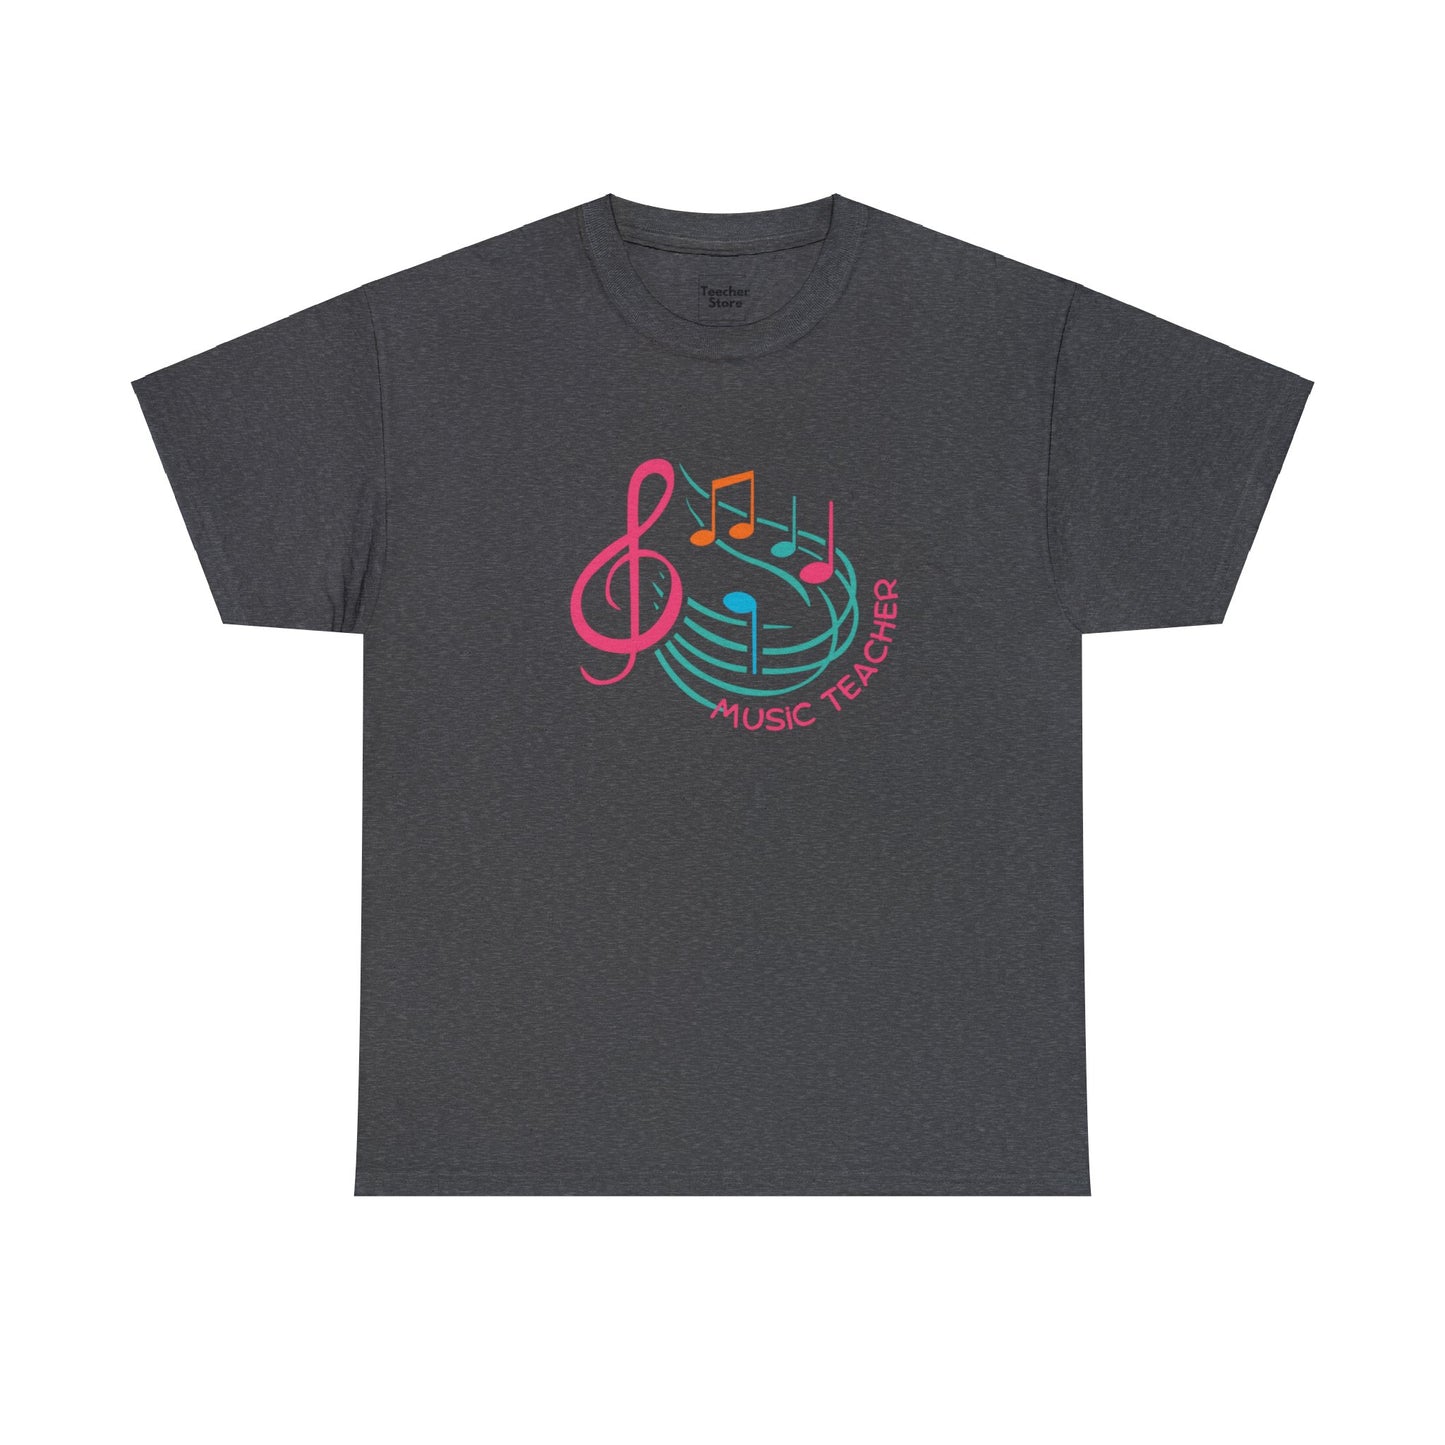 Music Teacher Tee-Shirt